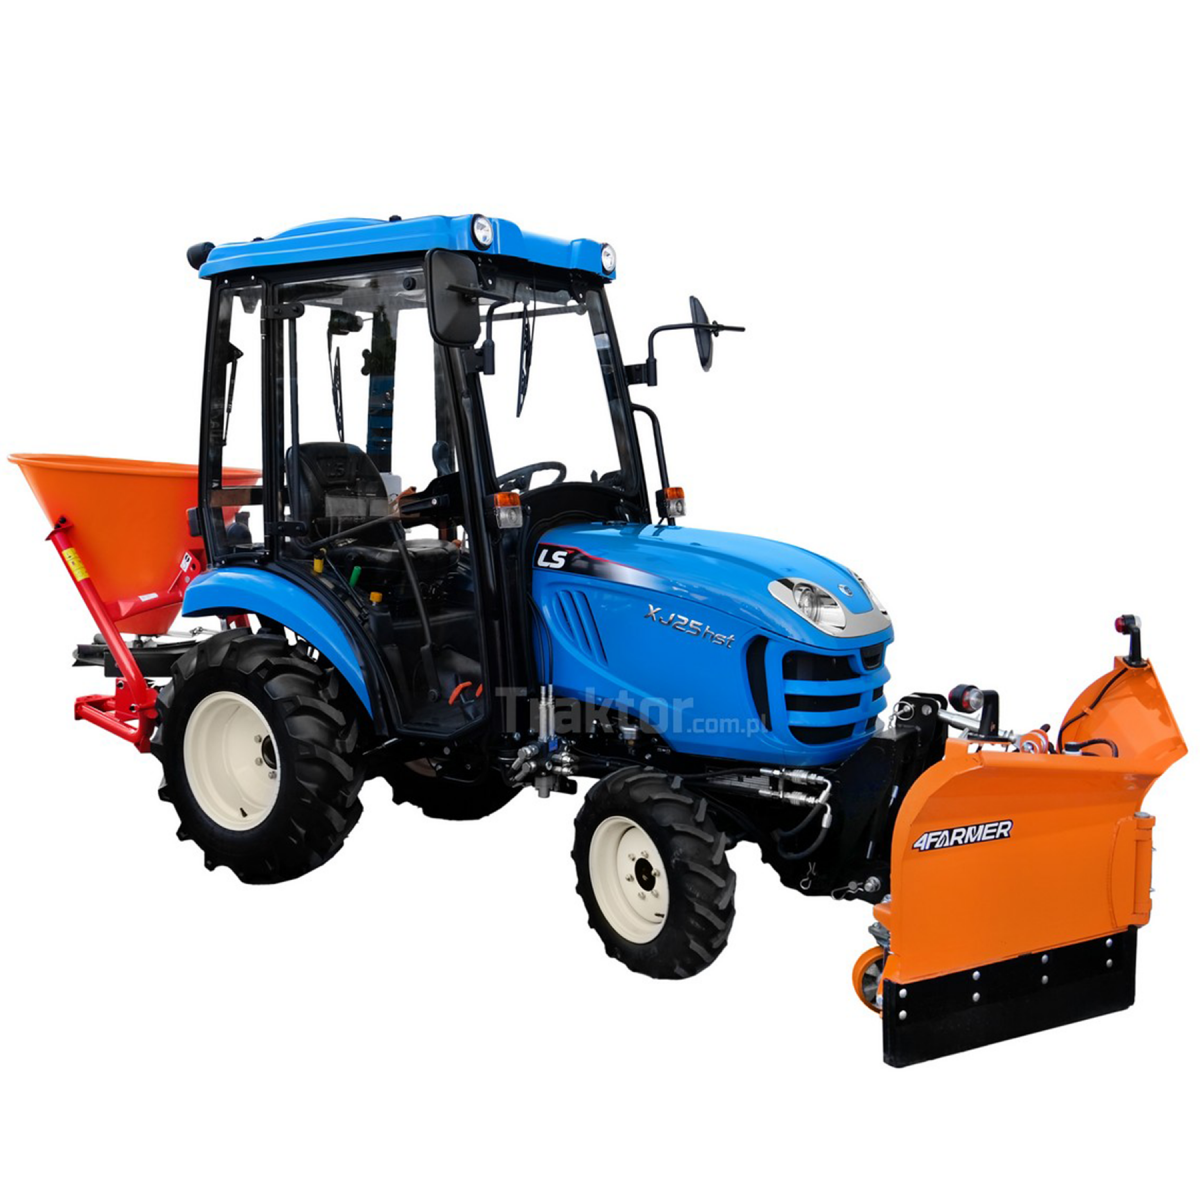 LS Traktor XJ25 HST 4x4 - 24,4 HP / CAB + Vario šípový snežný pluh 150 cm, hydraulický 4FARMER + 200L sypač Dexwal